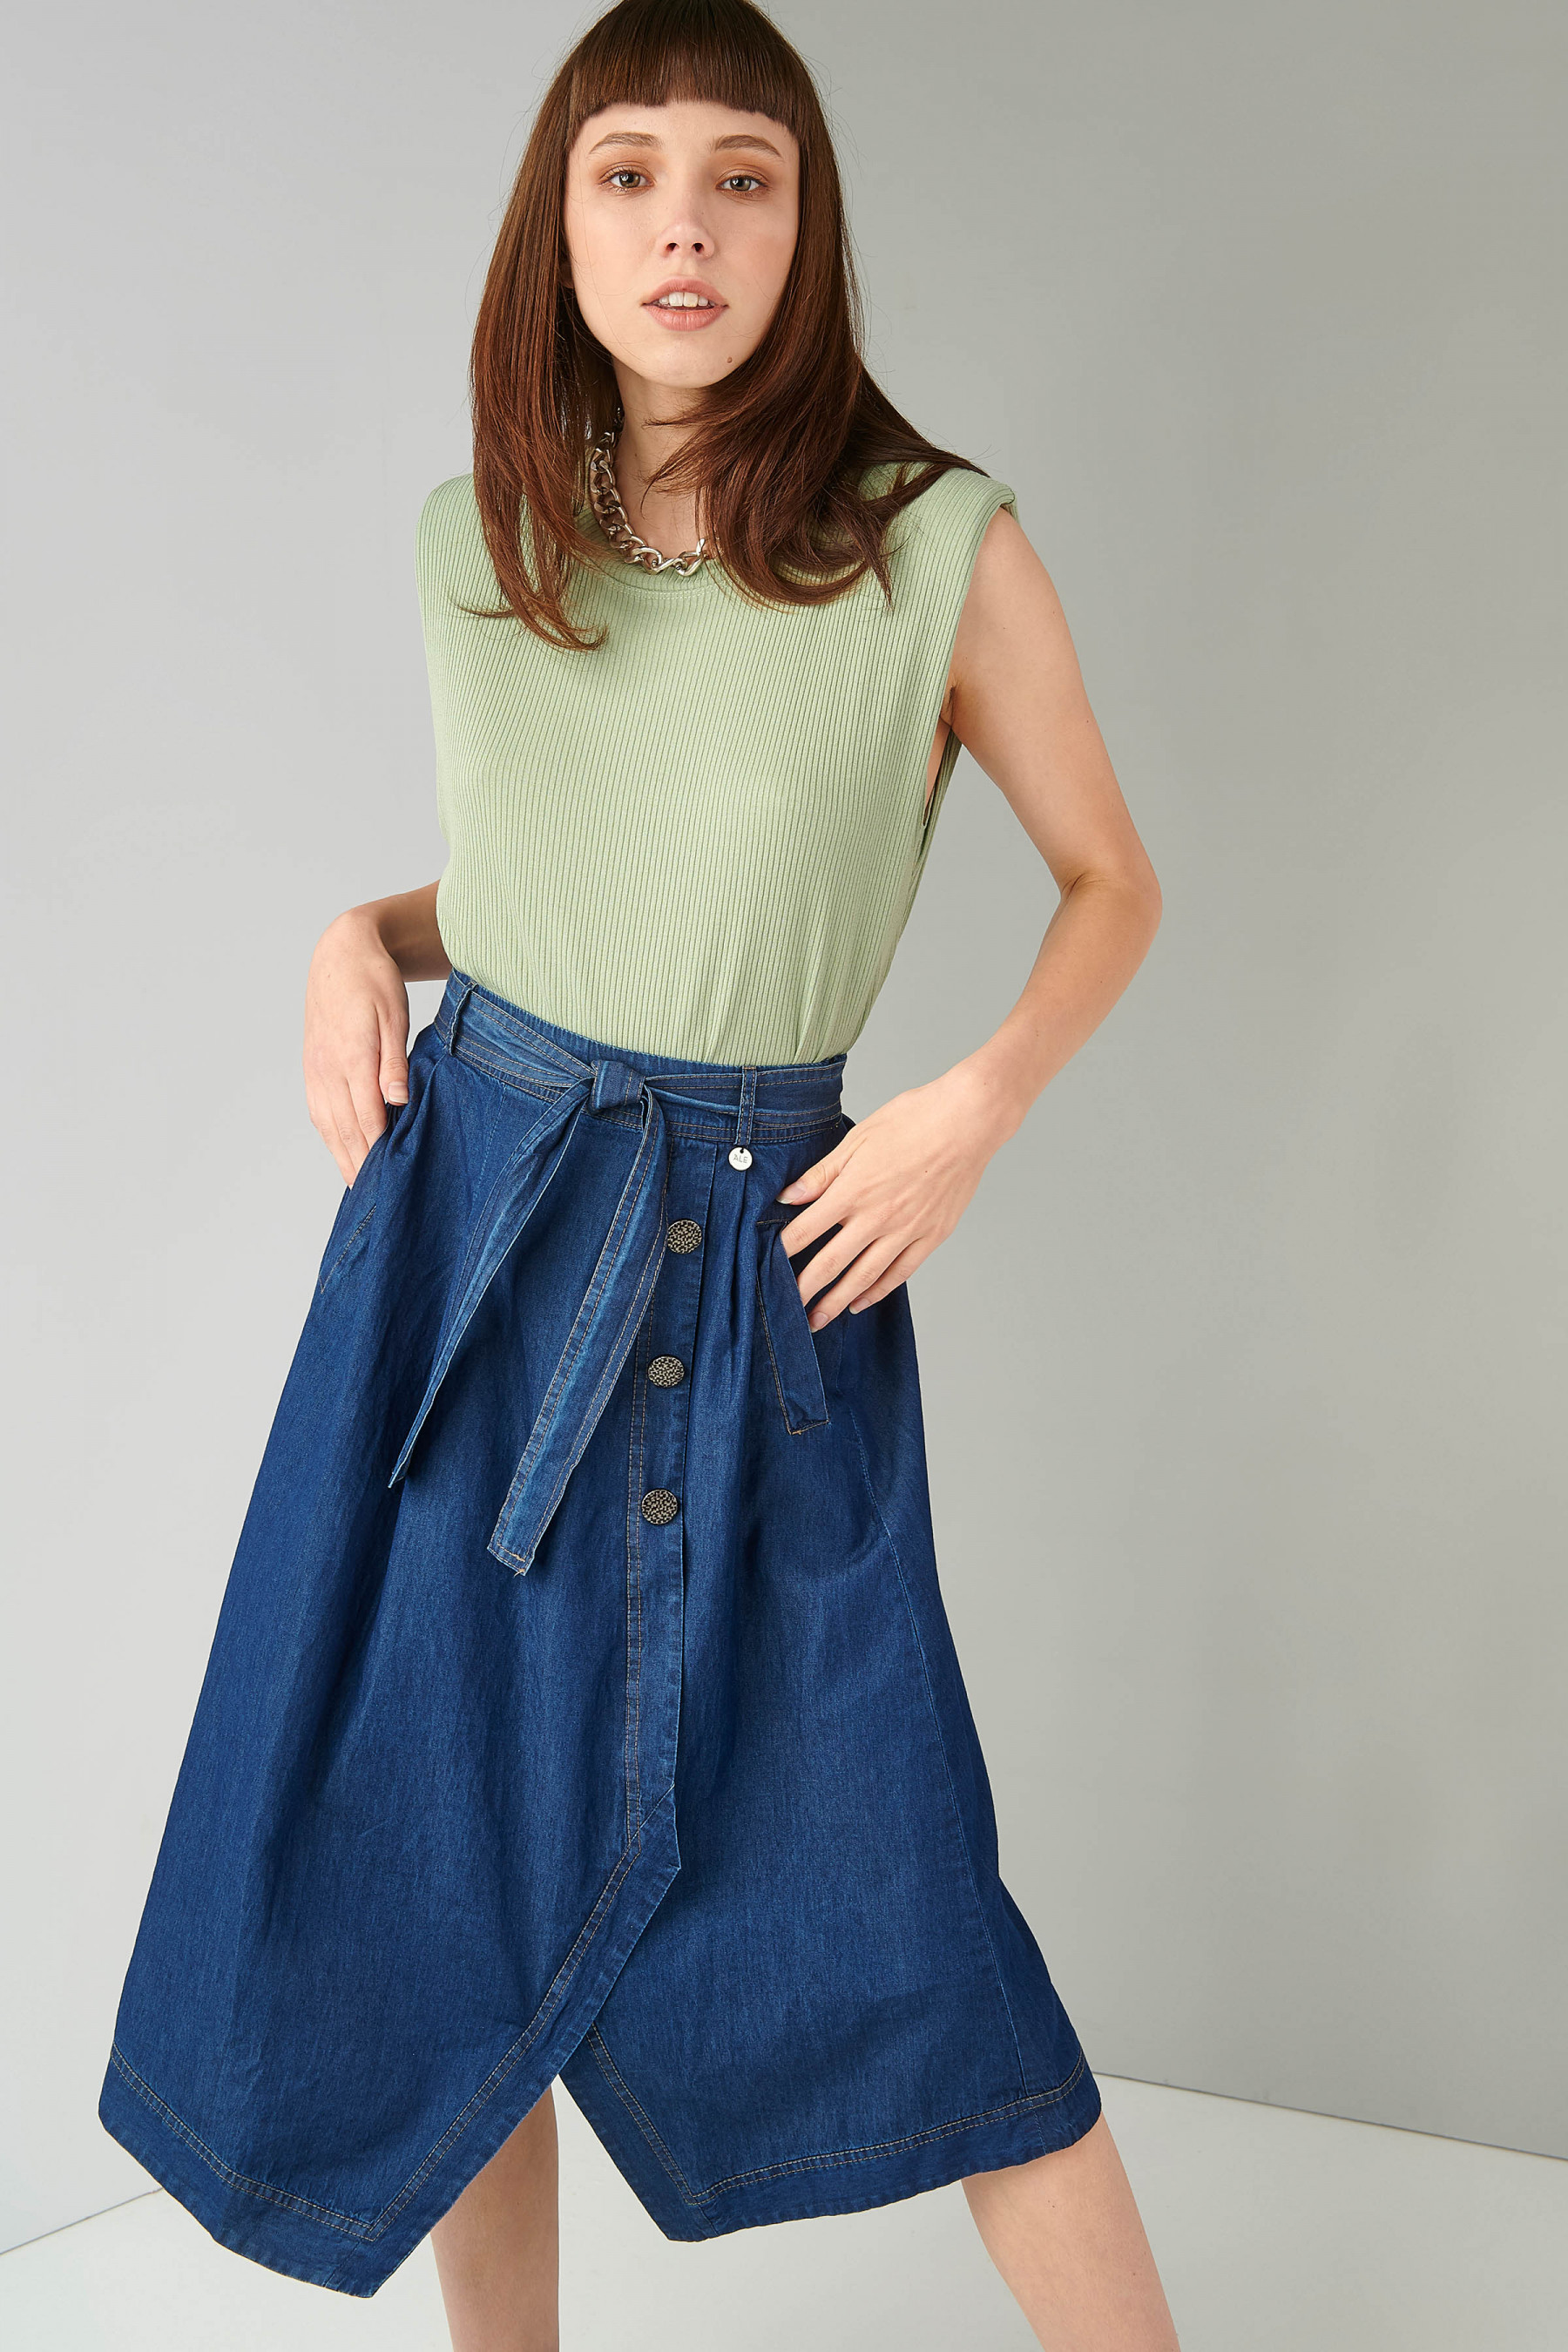 Skirtίματα: 5 στυλ φούστας που θα κάνουν την καρδιά σου να χτυπάει πιο δυνατά αυτήν την άνοιξη